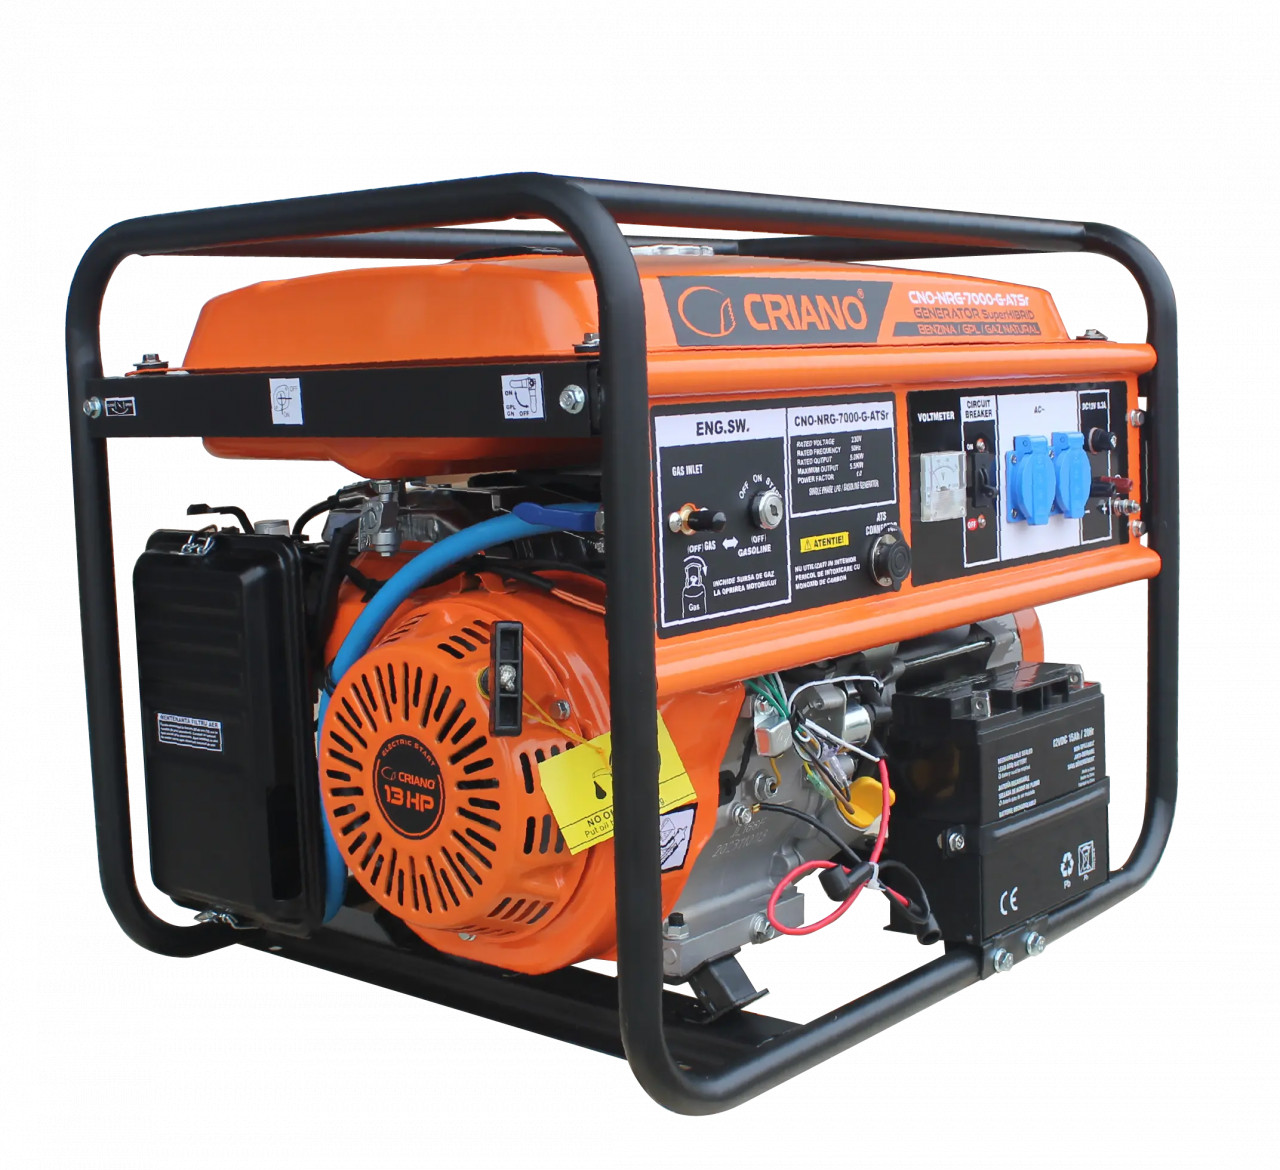 Generator de curent 5.5 kW SuperHIBRID (GPL + Gaz Natural + Benzina) cu posibilitate de Automatizare - CRIANO - CNO-NRG-7000-G-ATSr